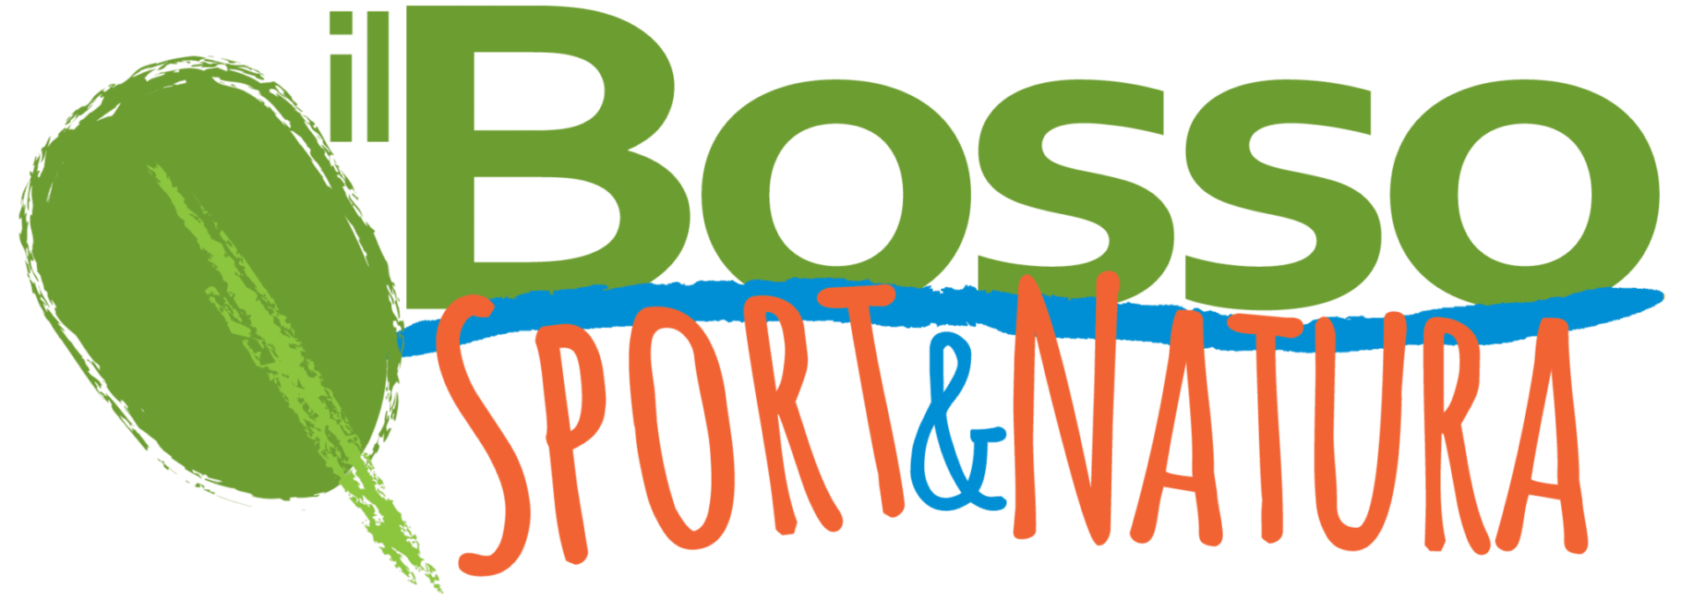 logo_ilbosso_sport-natura